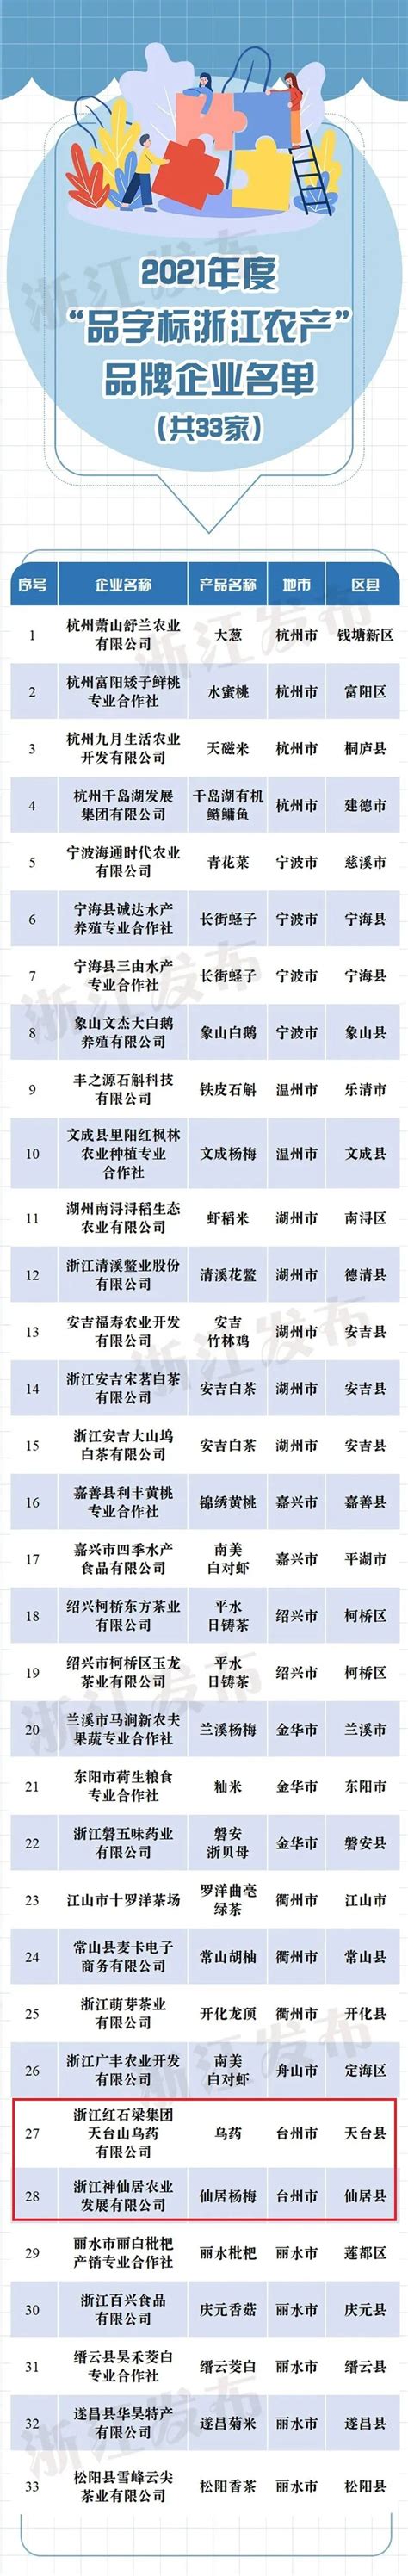 省级品牌，台州2家上榜-台州频道